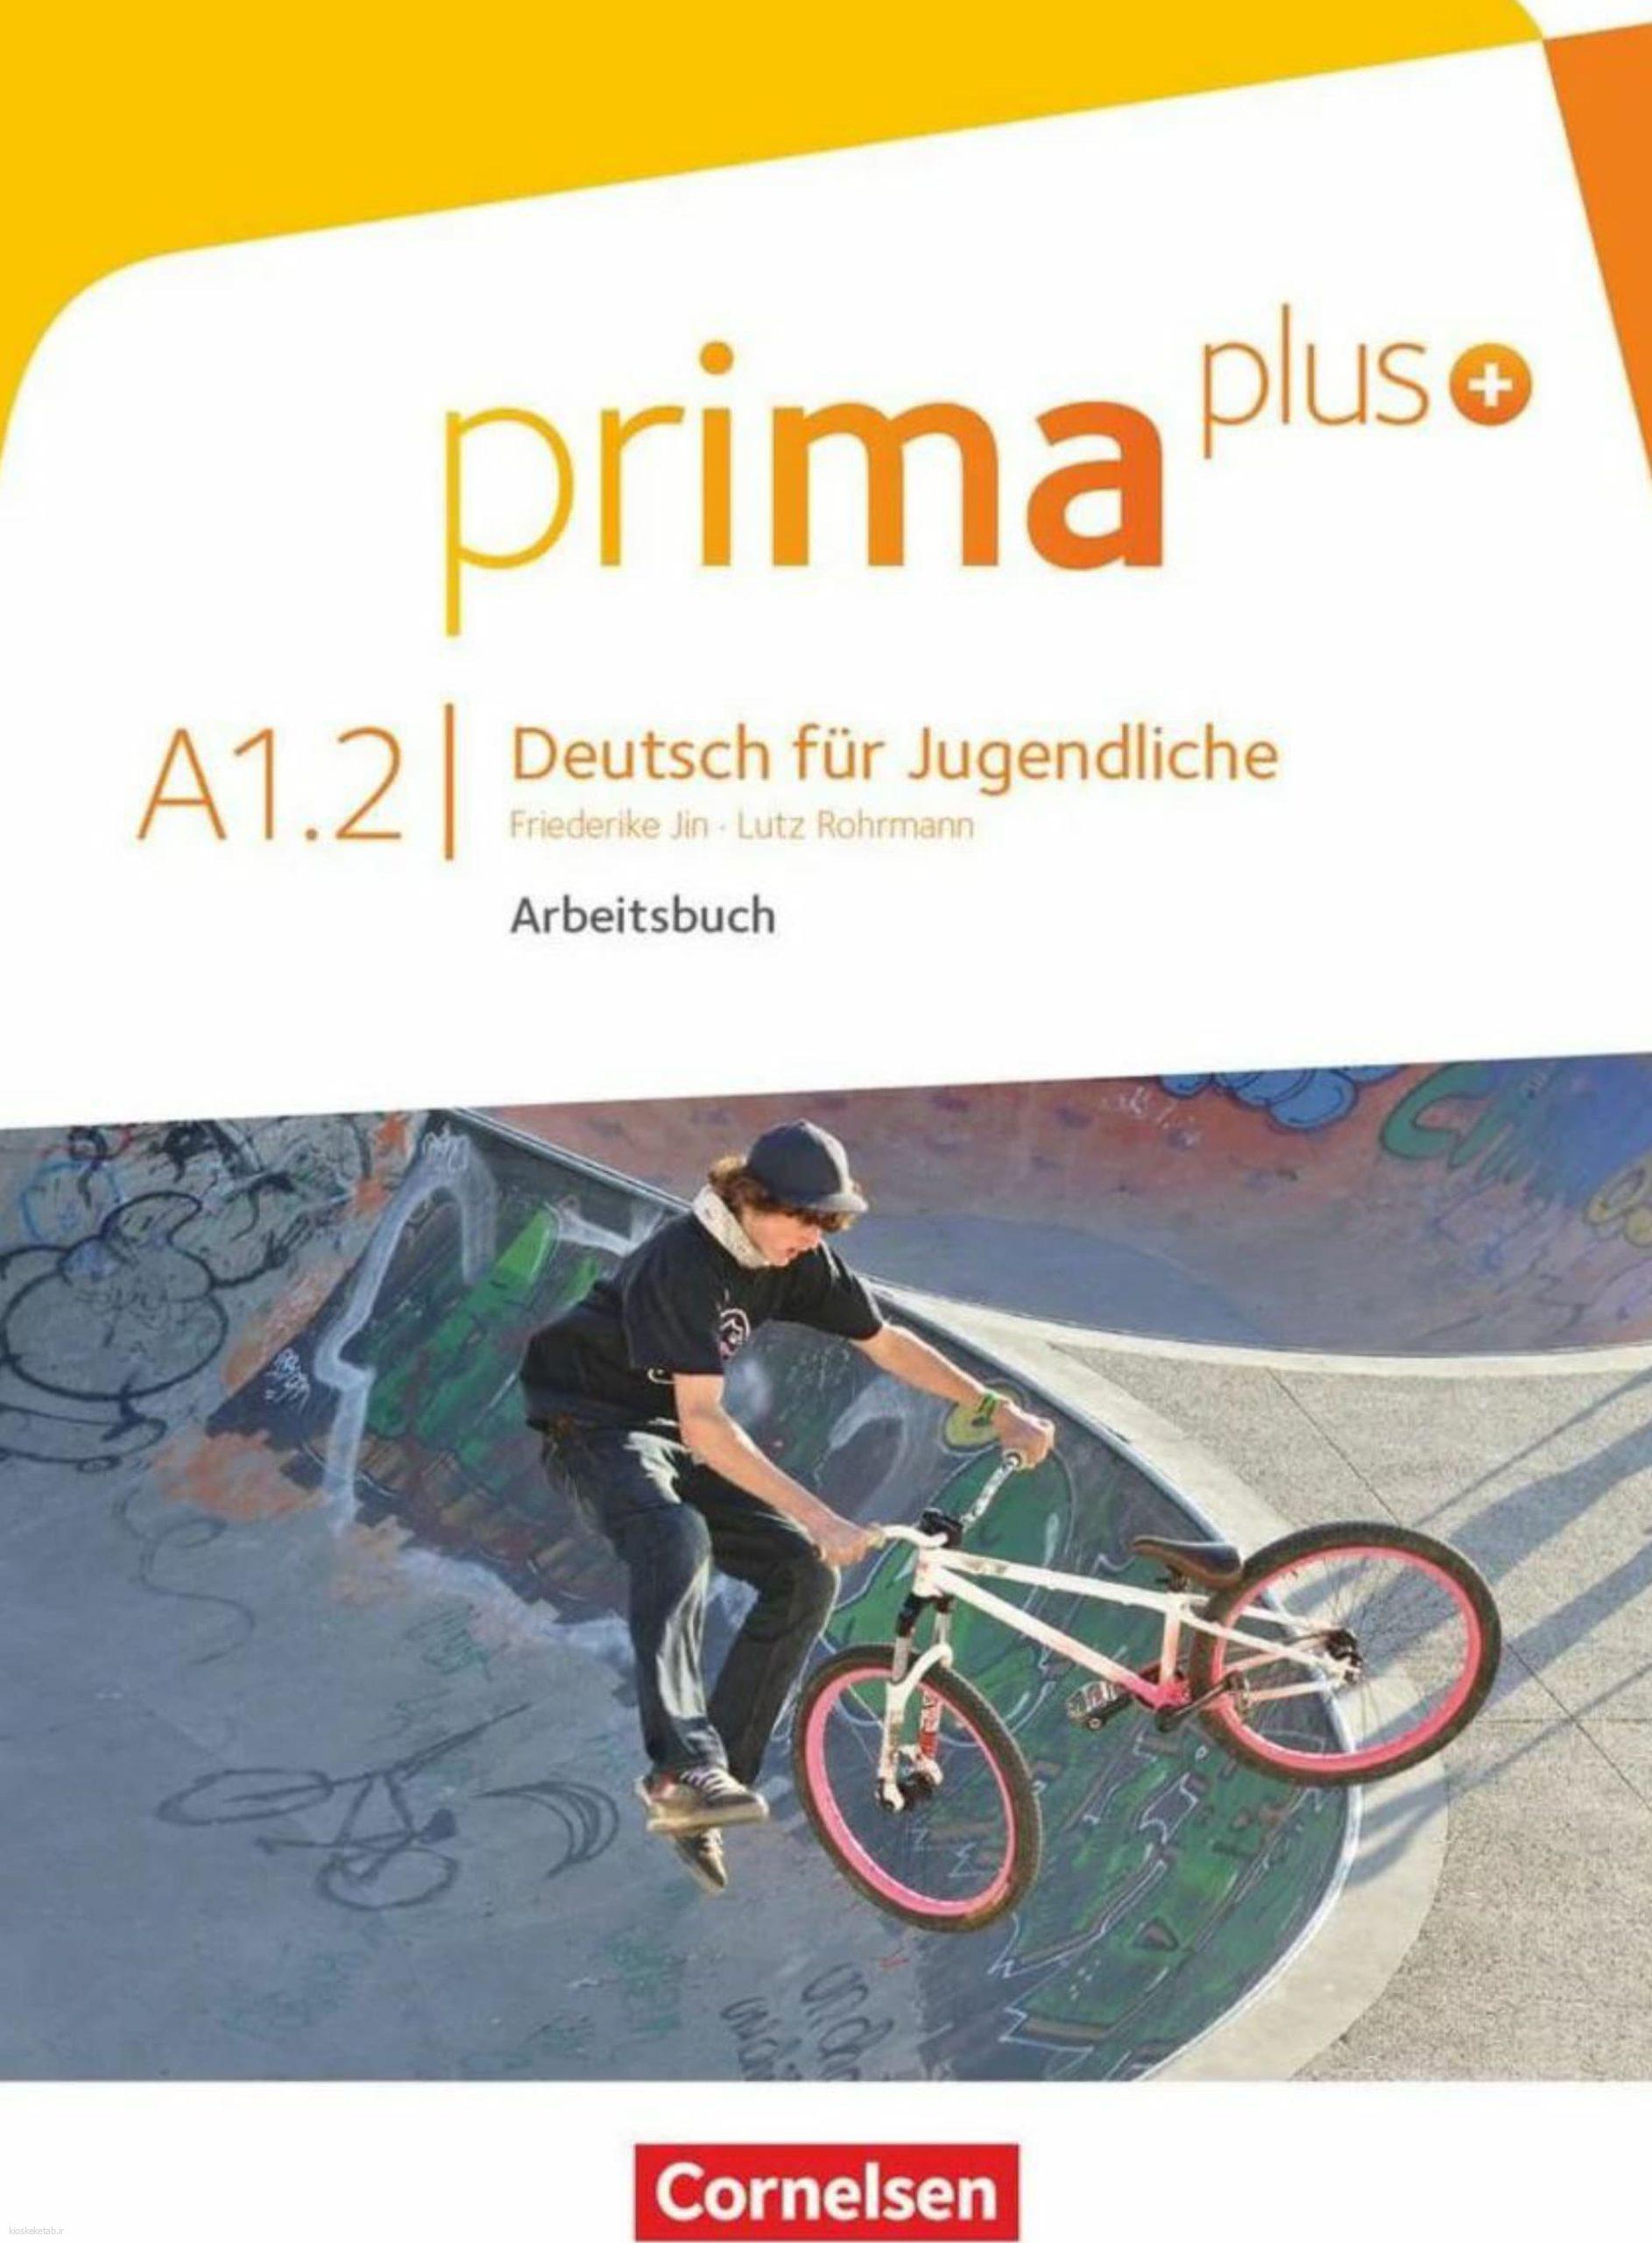 دانلود کتاب آلمانیprima plus a1.2